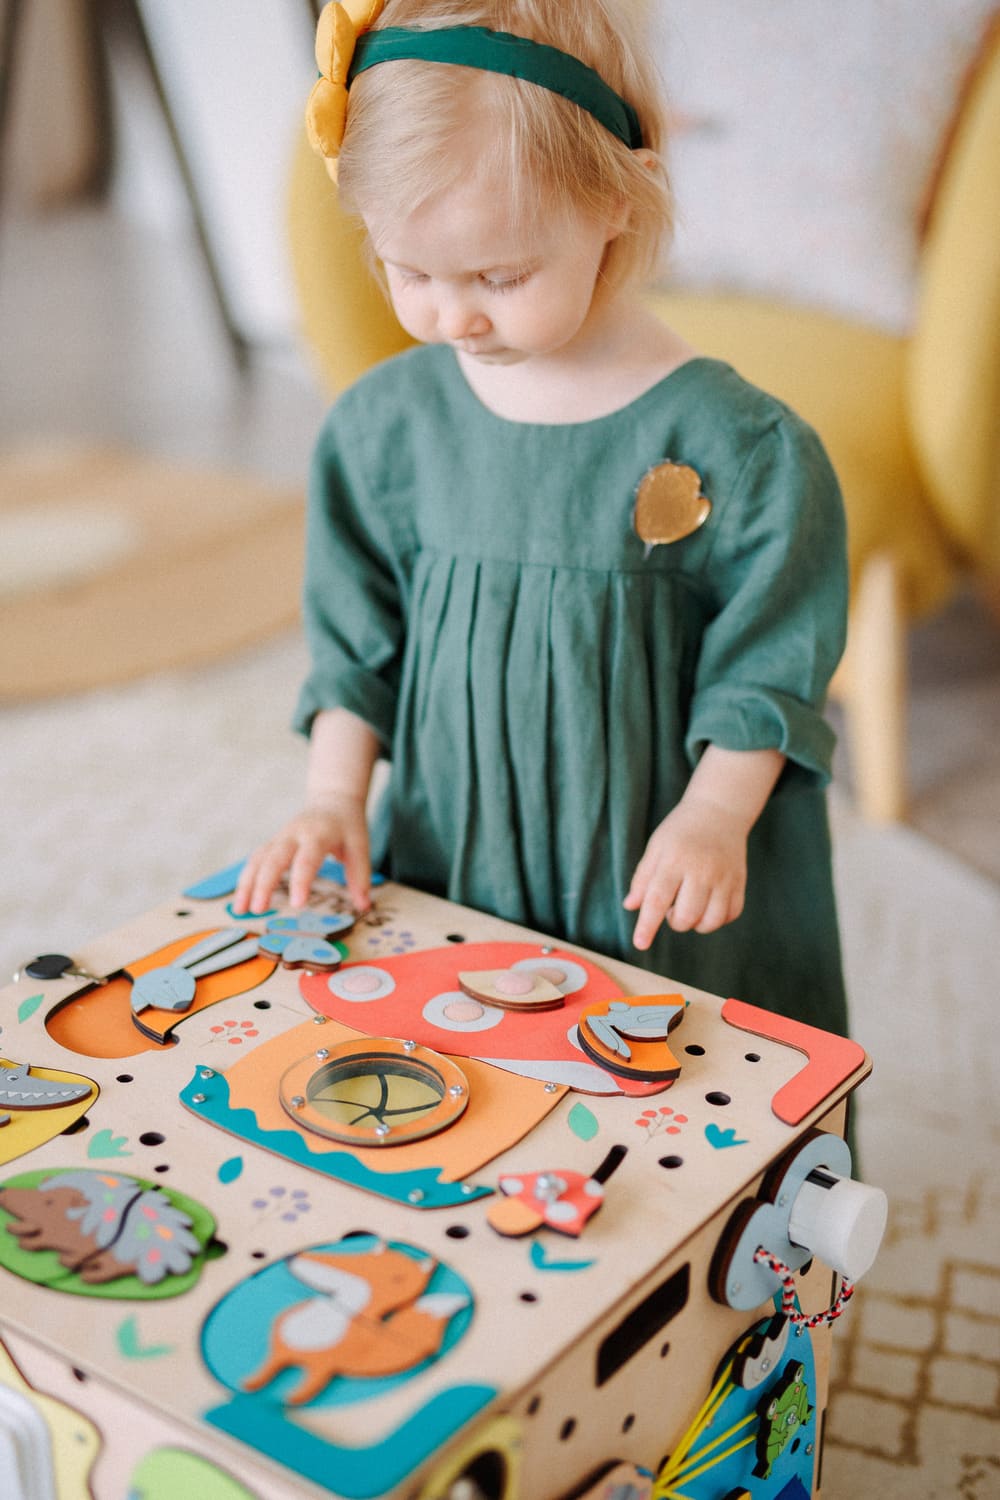 Kostka sensoryczna Bizibox to wielofunkcyjna zabawka. Wielobarwne kształty oraz klocki w puzzlach, ruchome elementy i przedmioty codziennego użytku (zasuwki, zamki, klucze, kontakt z wtyczką) wspomagają rozumienie świata i zaspokajają naturalną ciekawość dzieci.